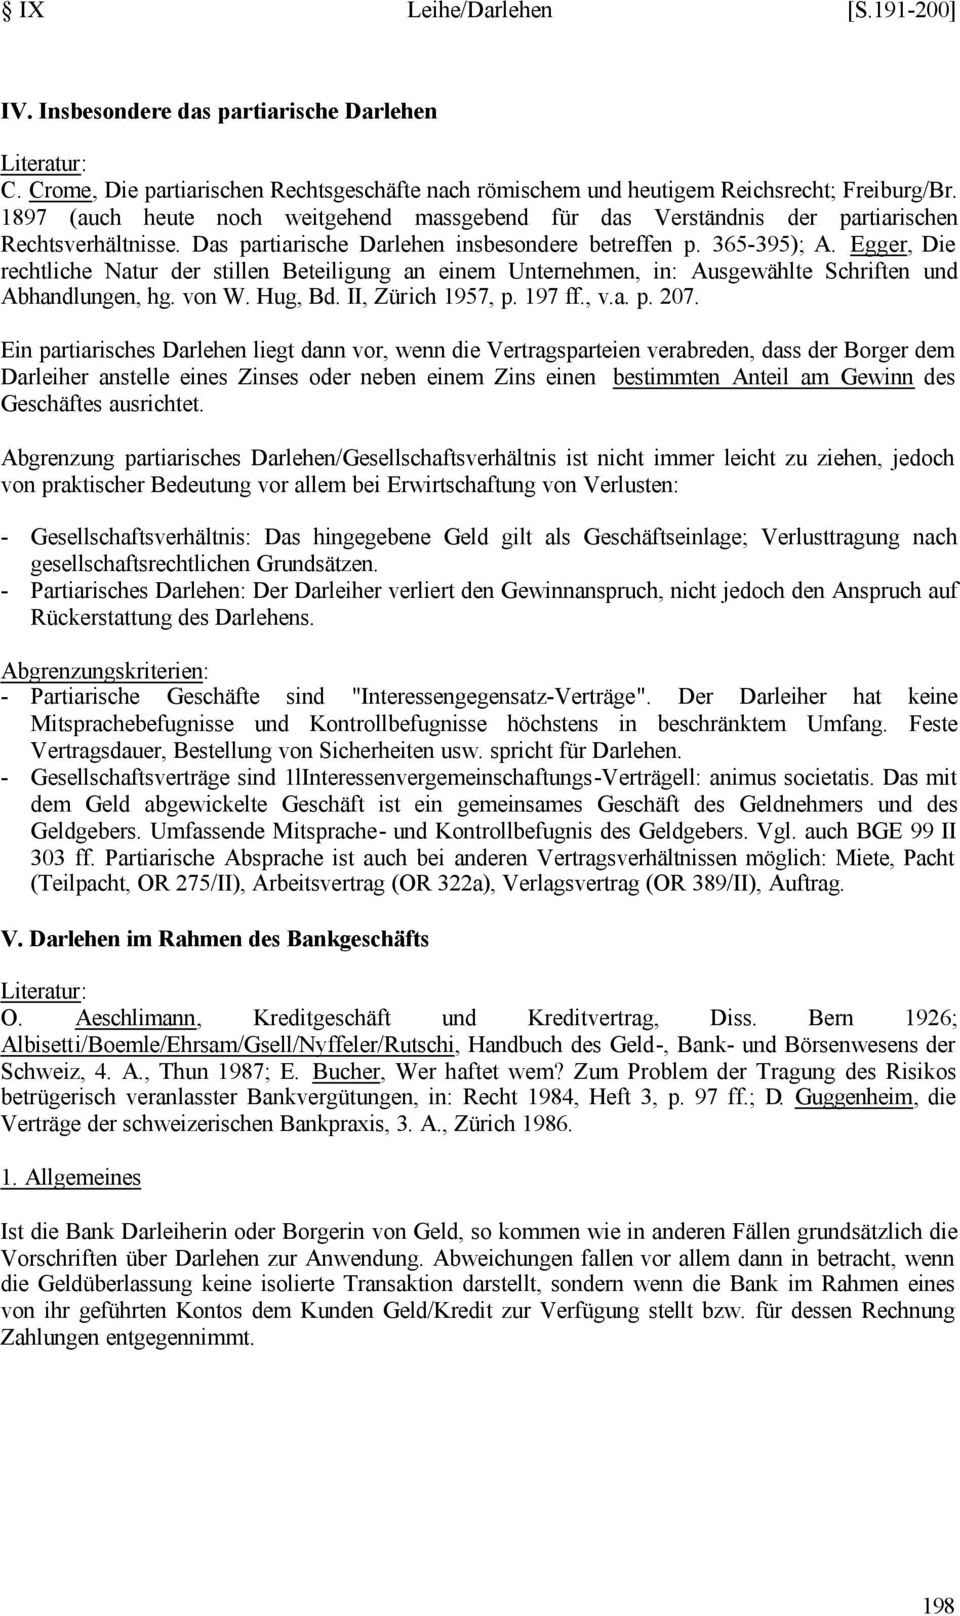 Egger, Die rechtliche Natur der stillen Beteiligung an einem Unternehmen, in: Ausgewählte Schriften und Abhandlungen, hg. von W. Hug, Bd. II, Zürich 1957, p. 197 ff., v.a. p. 207.